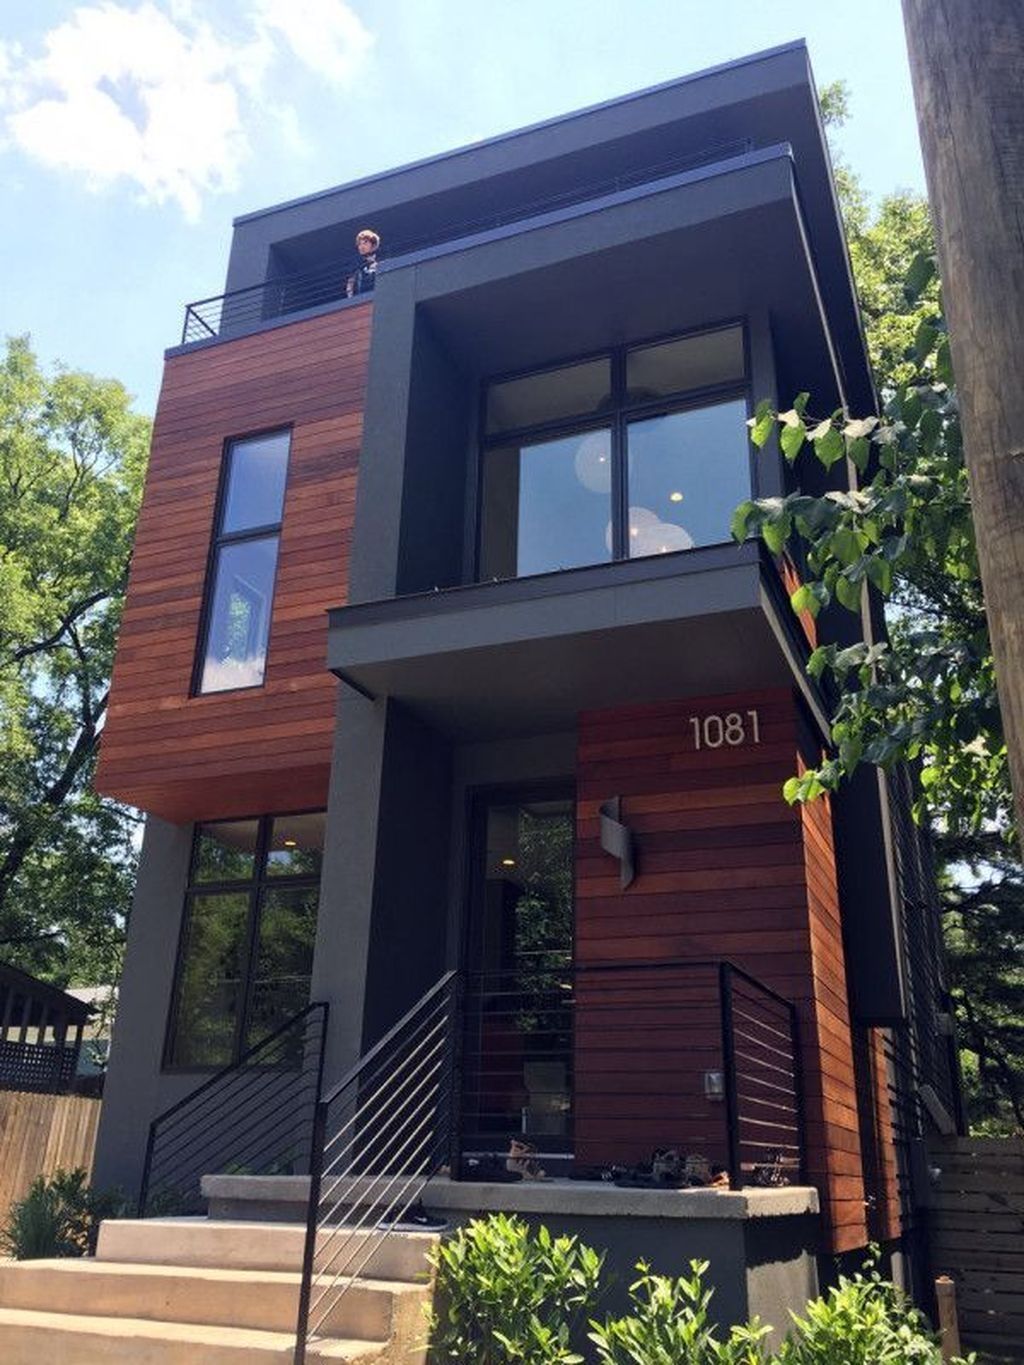 30+ Pretty Small House Design Architecture Ideas - TRENDEDECOR